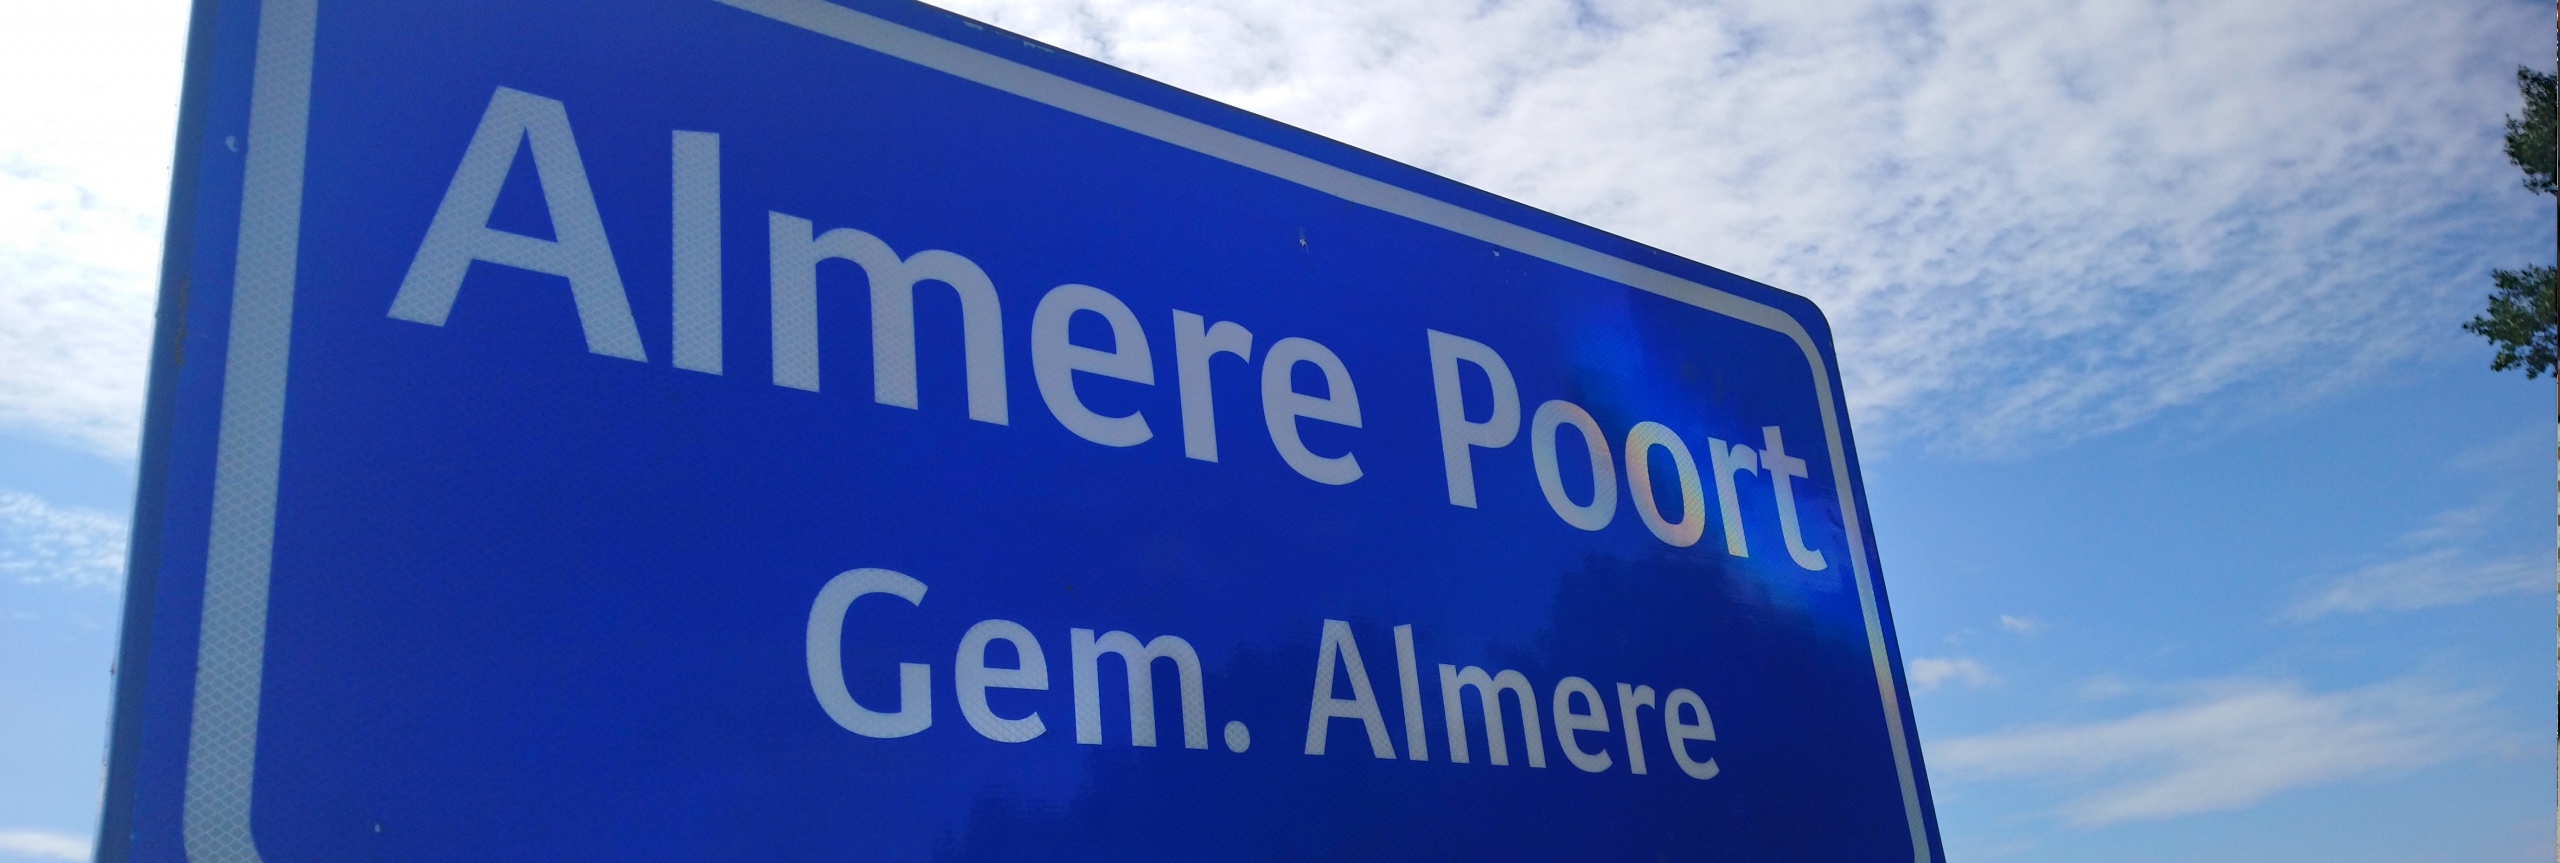 Blauwverkeersbord op de grens van Almere Poort